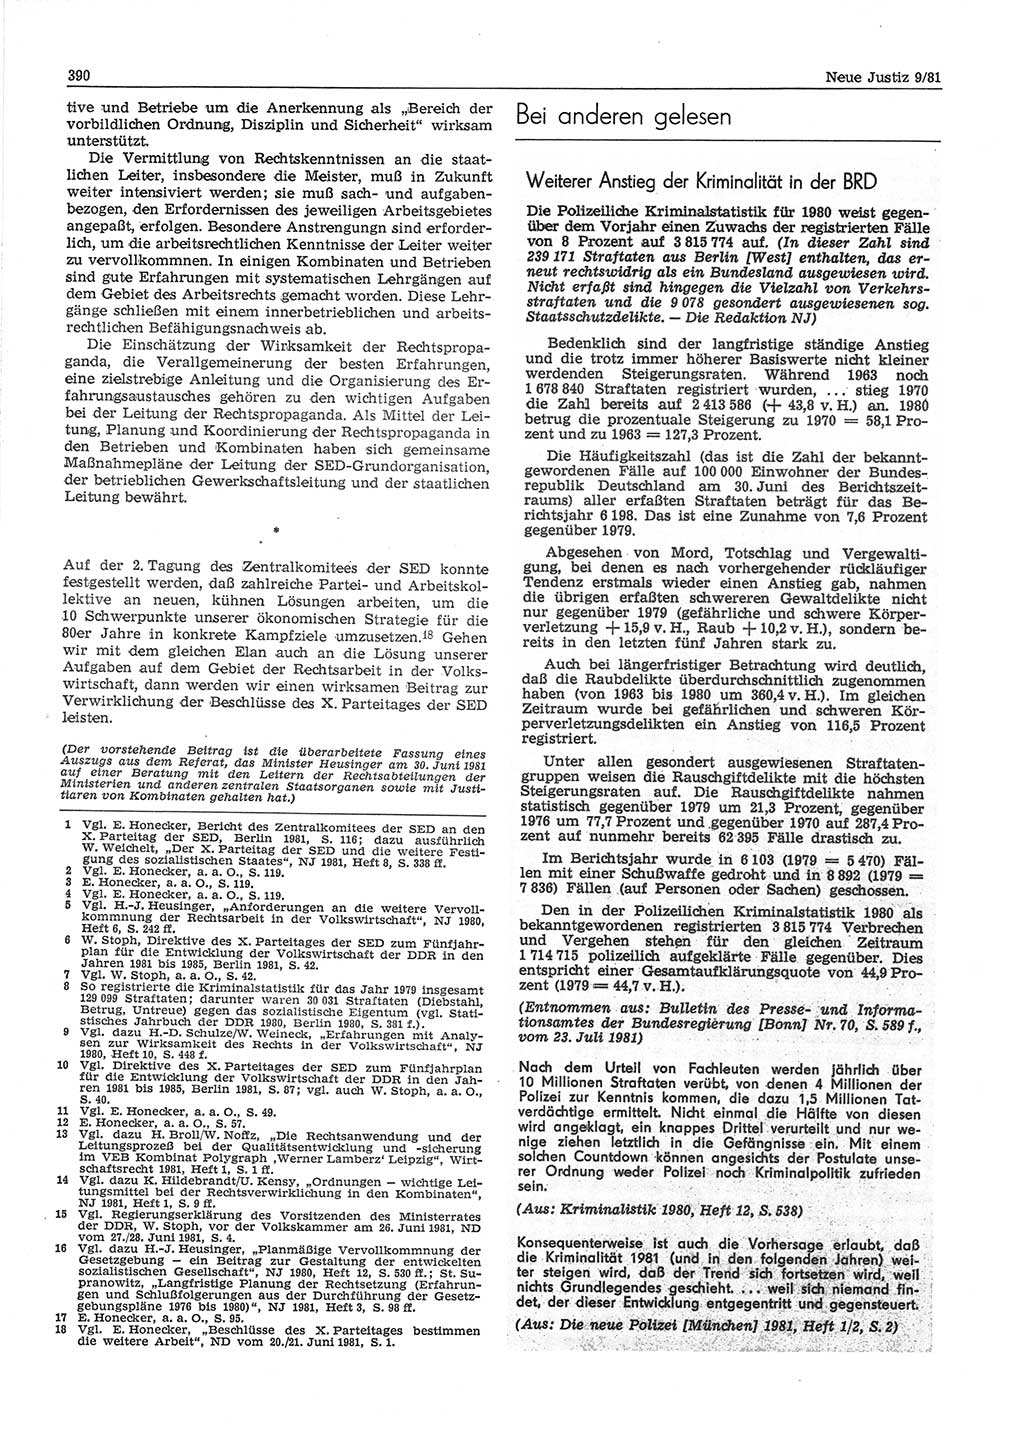 Neue Justiz (NJ), Zeitschrift für sozialistisches Recht und Gesetzlichkeit [Deutsche Demokratische Republik (DDR)], 35. Jahrgang 1981, Seite 390 (NJ DDR 1981, S. 390)